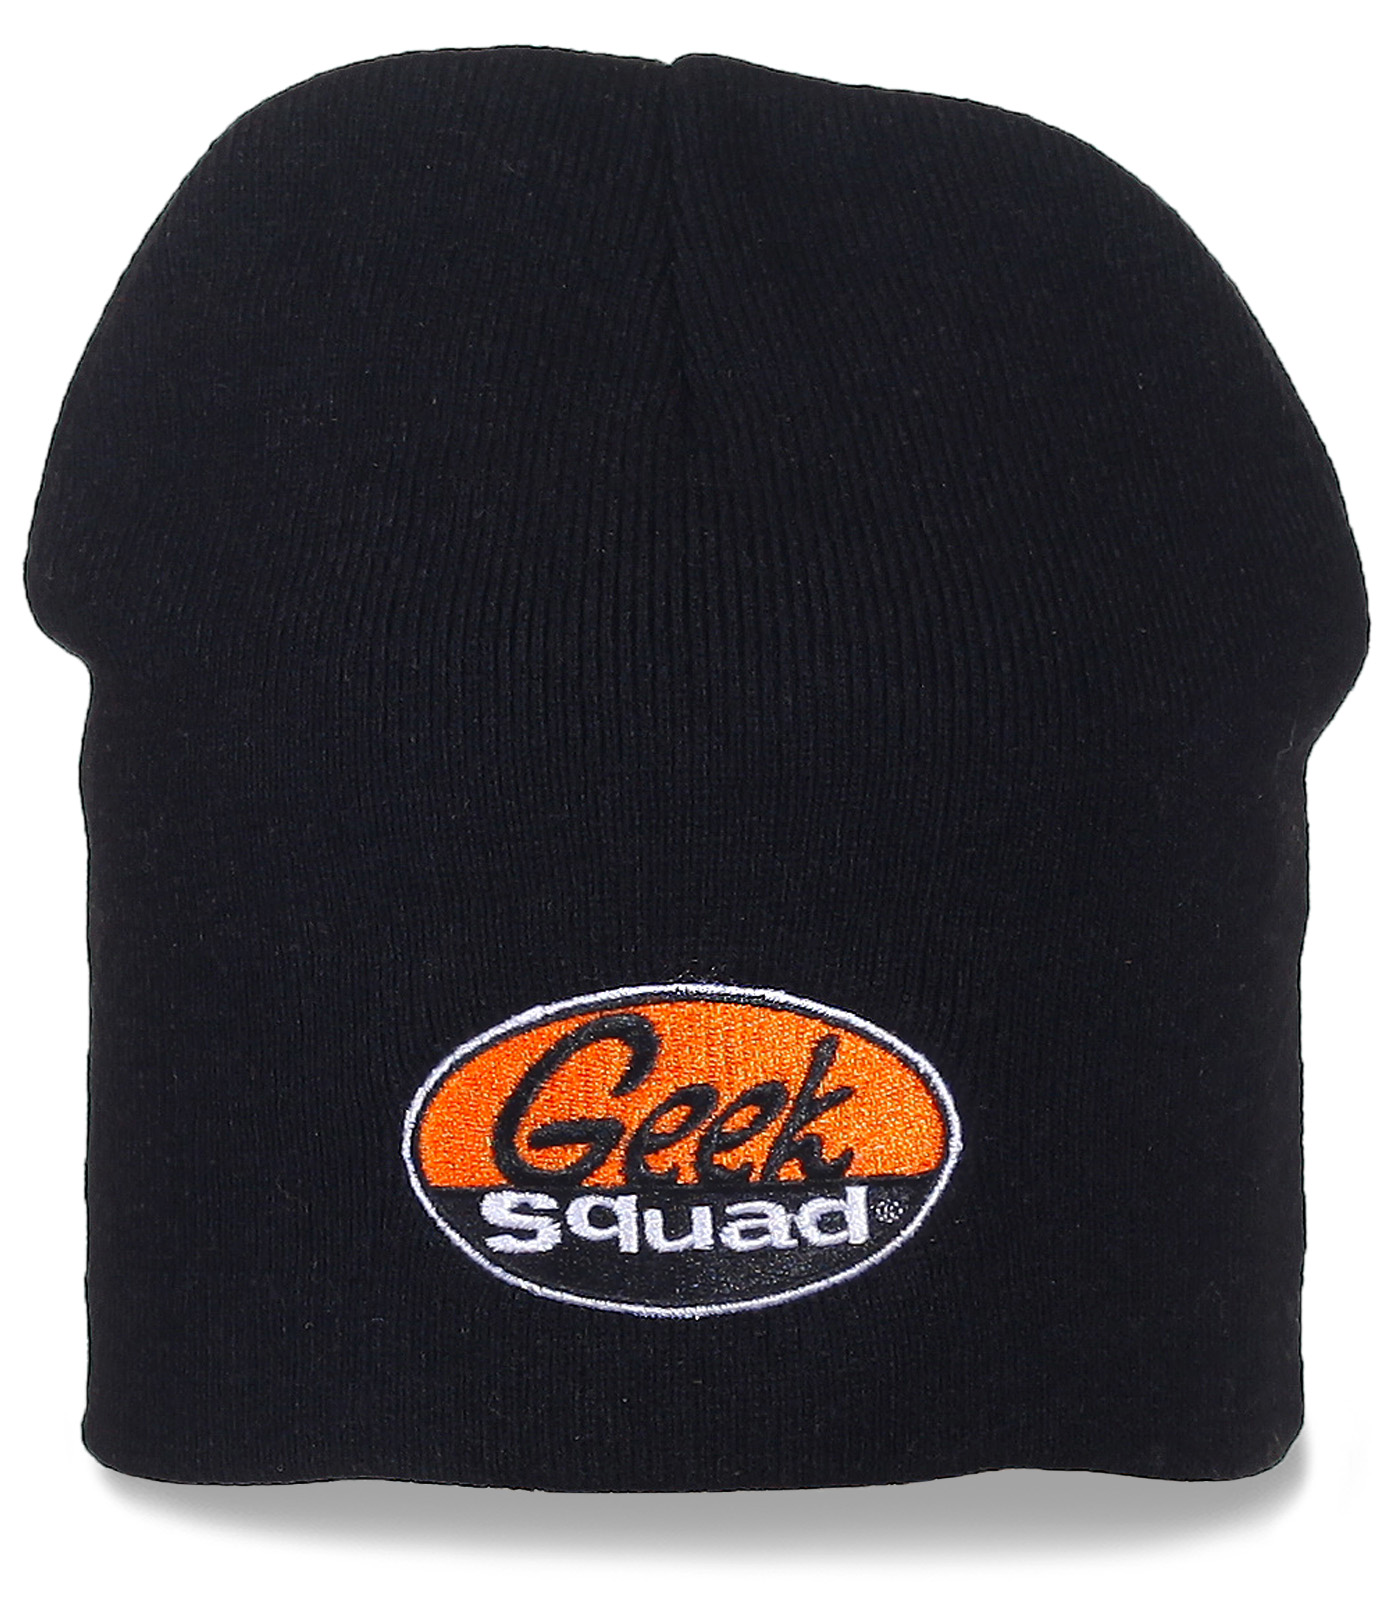 Заказать мужские шапки Geek Squad с доставкой